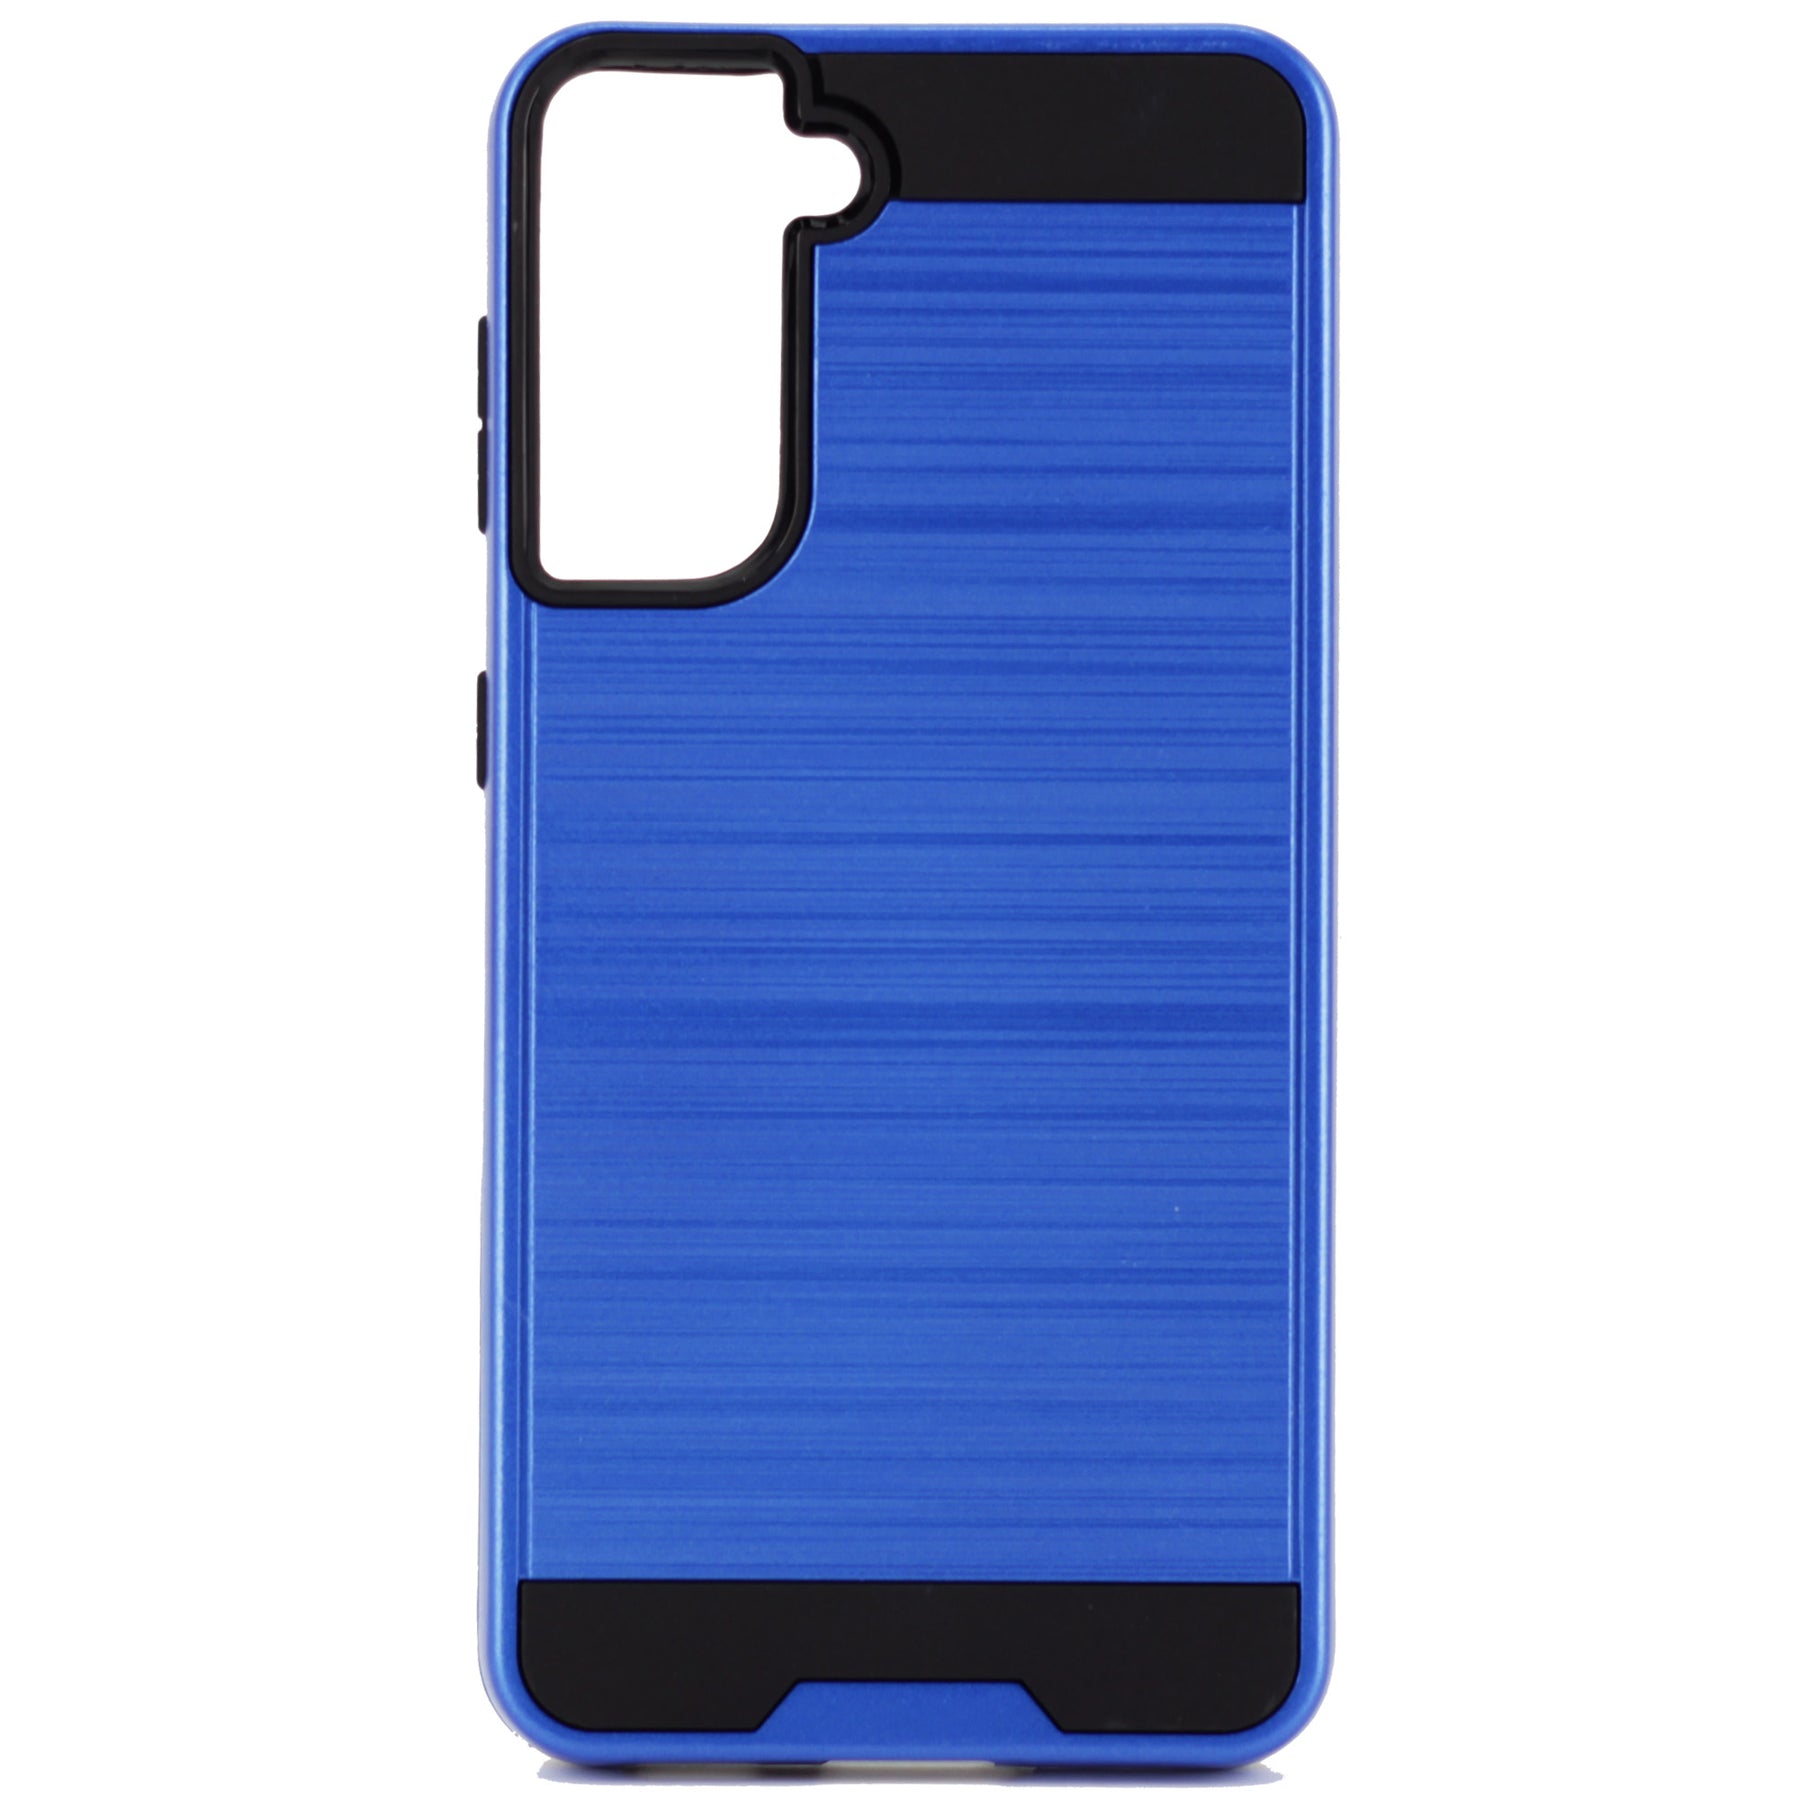 Samsung S21 blue slim case